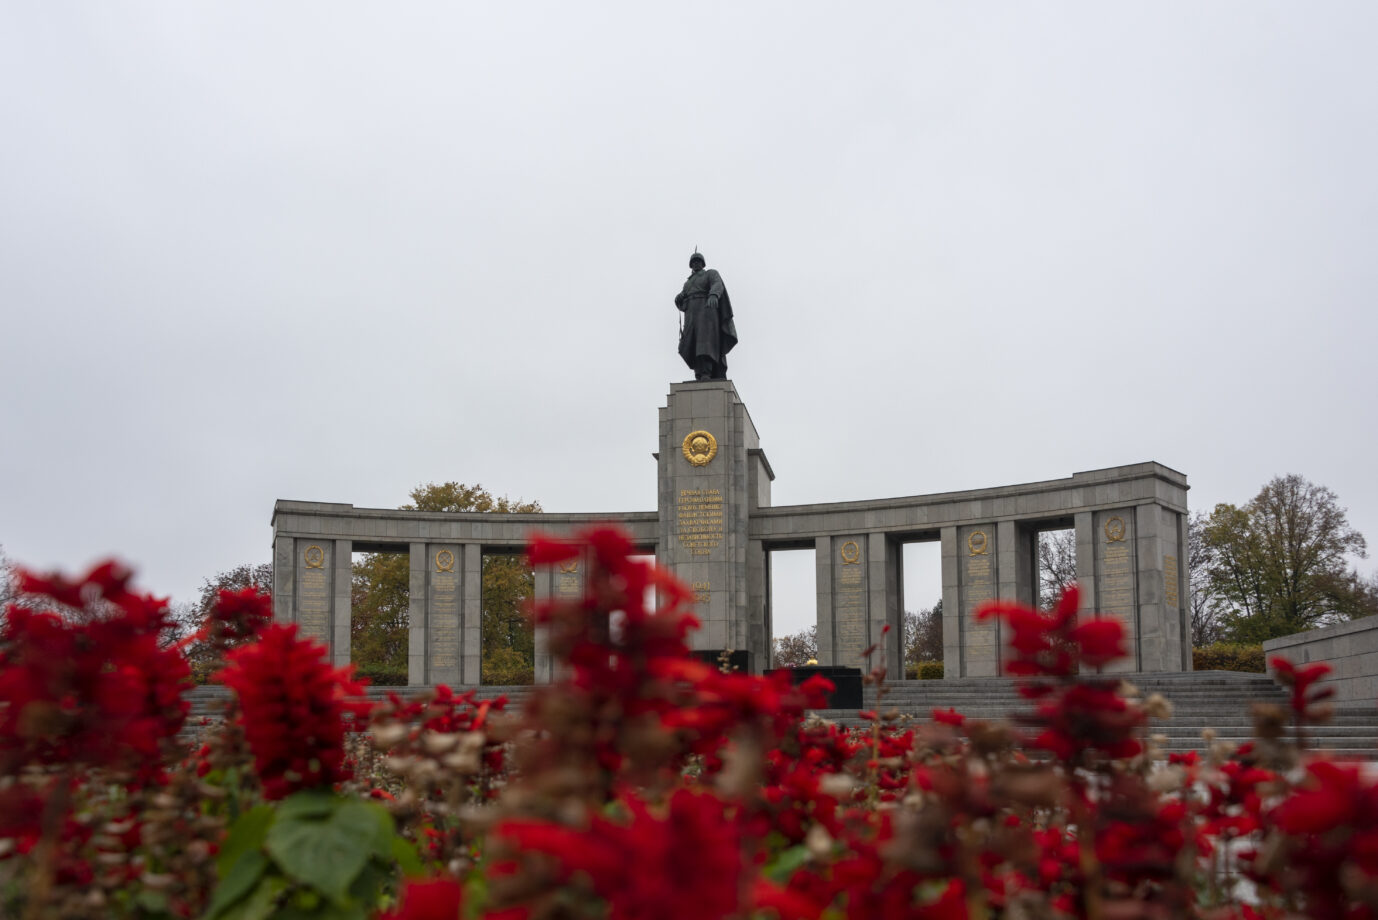 Das Sowjetische Ehrenmal am Berliner Tiergarten an einem trüben Novembertag. Das Ehrenmal wurde am 11. November 1945 mit einer Parade alliierter Truppen eingeweiht. Es erinnert an die rund 80000 Rotarmisten, die in der Schlacht um Berlin ums Leben kamen. Unter unserer Würde.